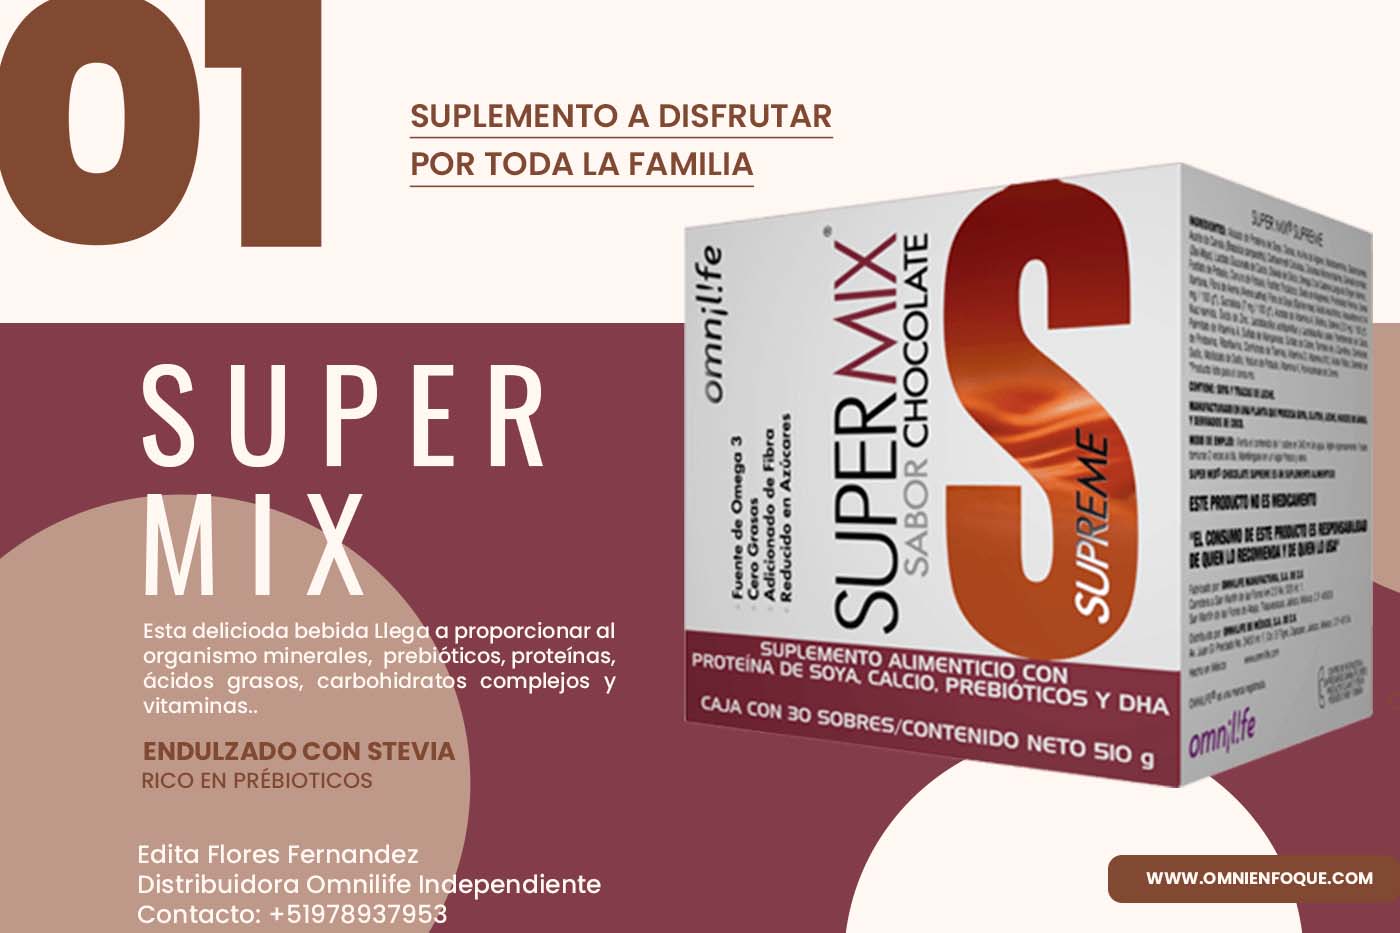 Supermix de Omnilife es una malteada rica en nutrientes y prebioticos que mejora tu digestion